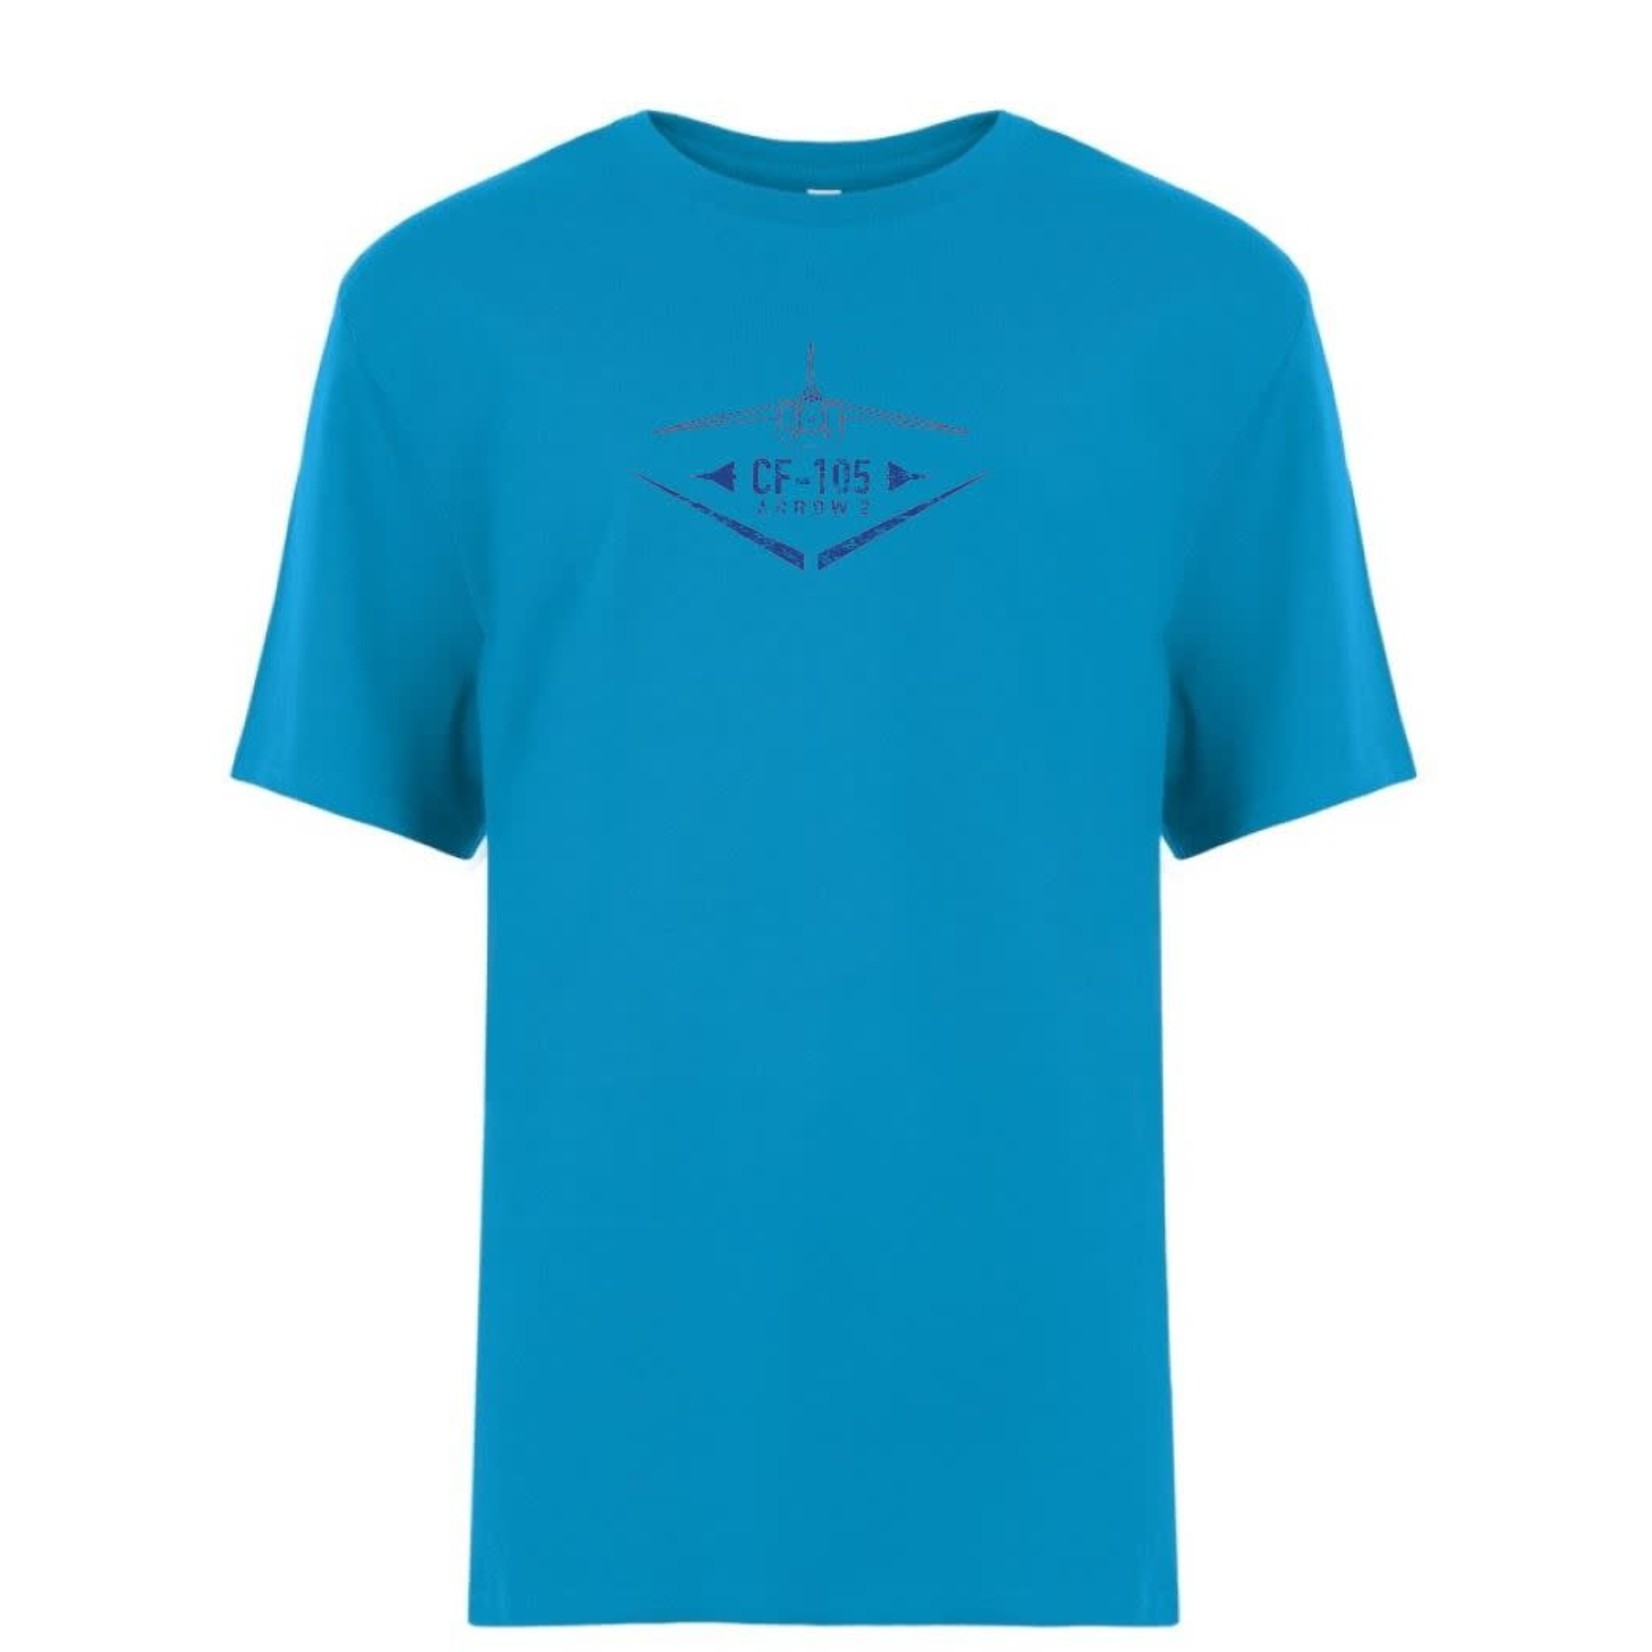 Aviation and Space T-shirt d’aspect usé pour jeune Arrow d’Avro